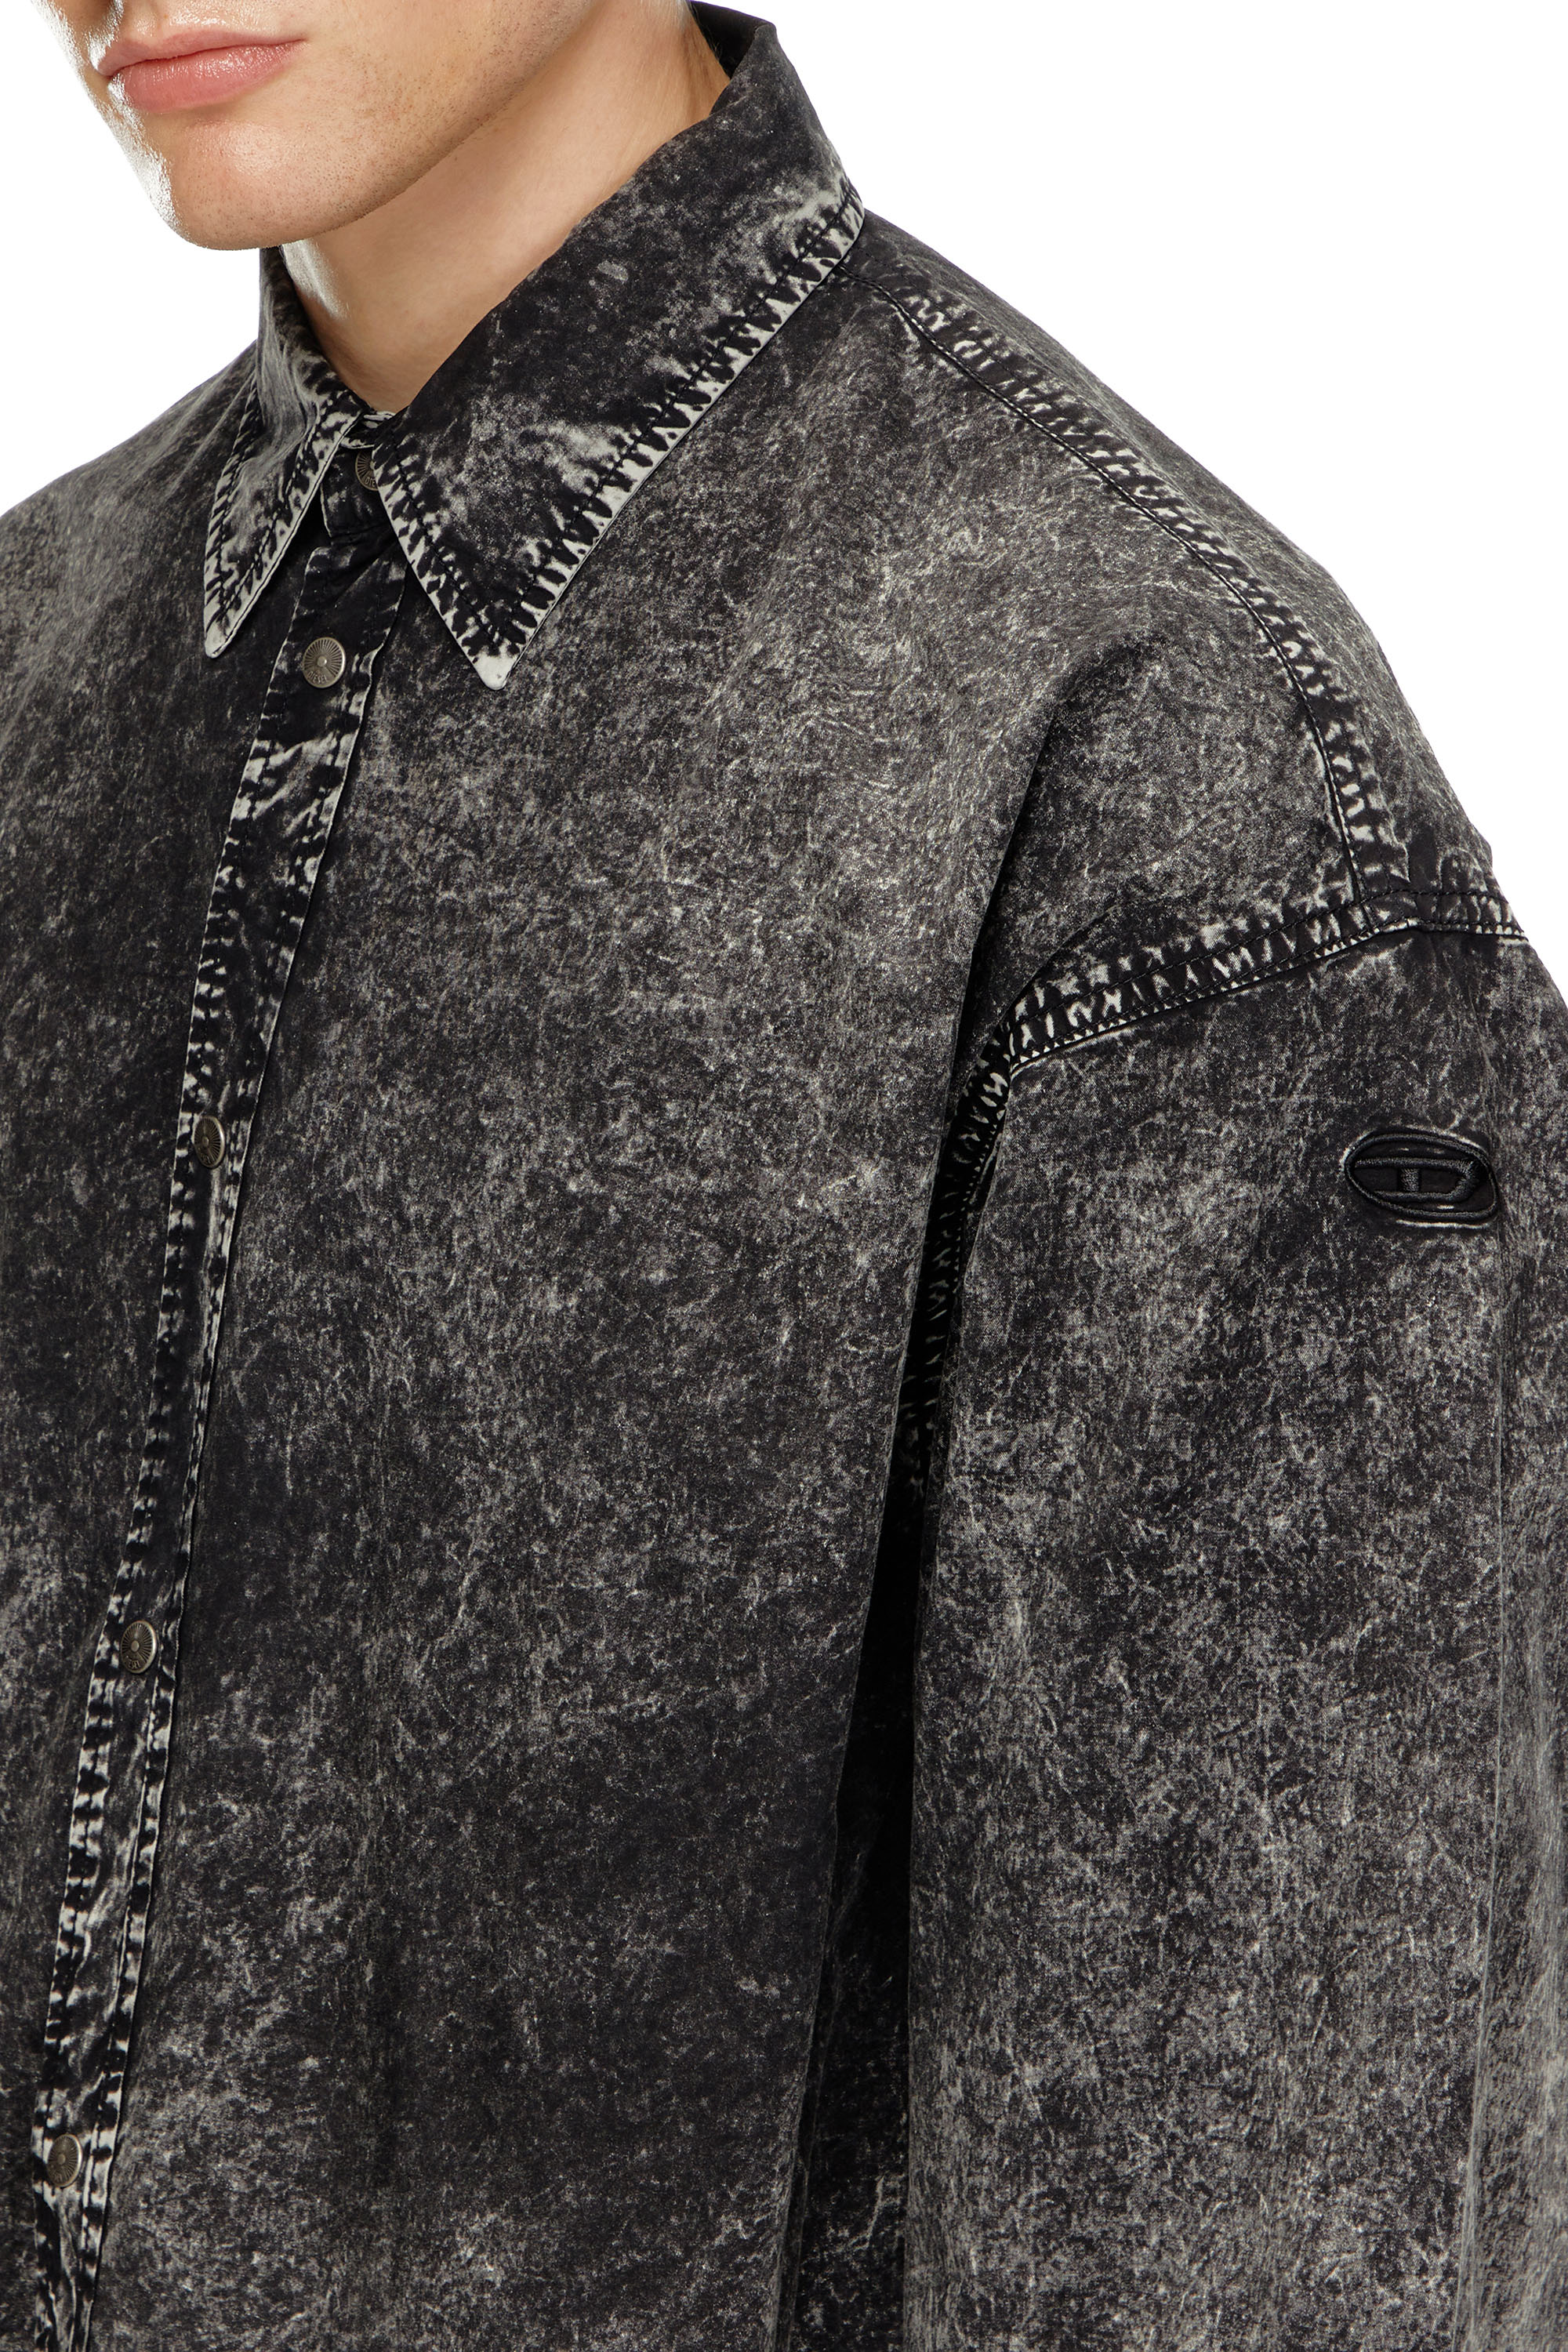 Diesel - S-VEKEN, Male Shirt in marbled cotton in ブラック - Image 5